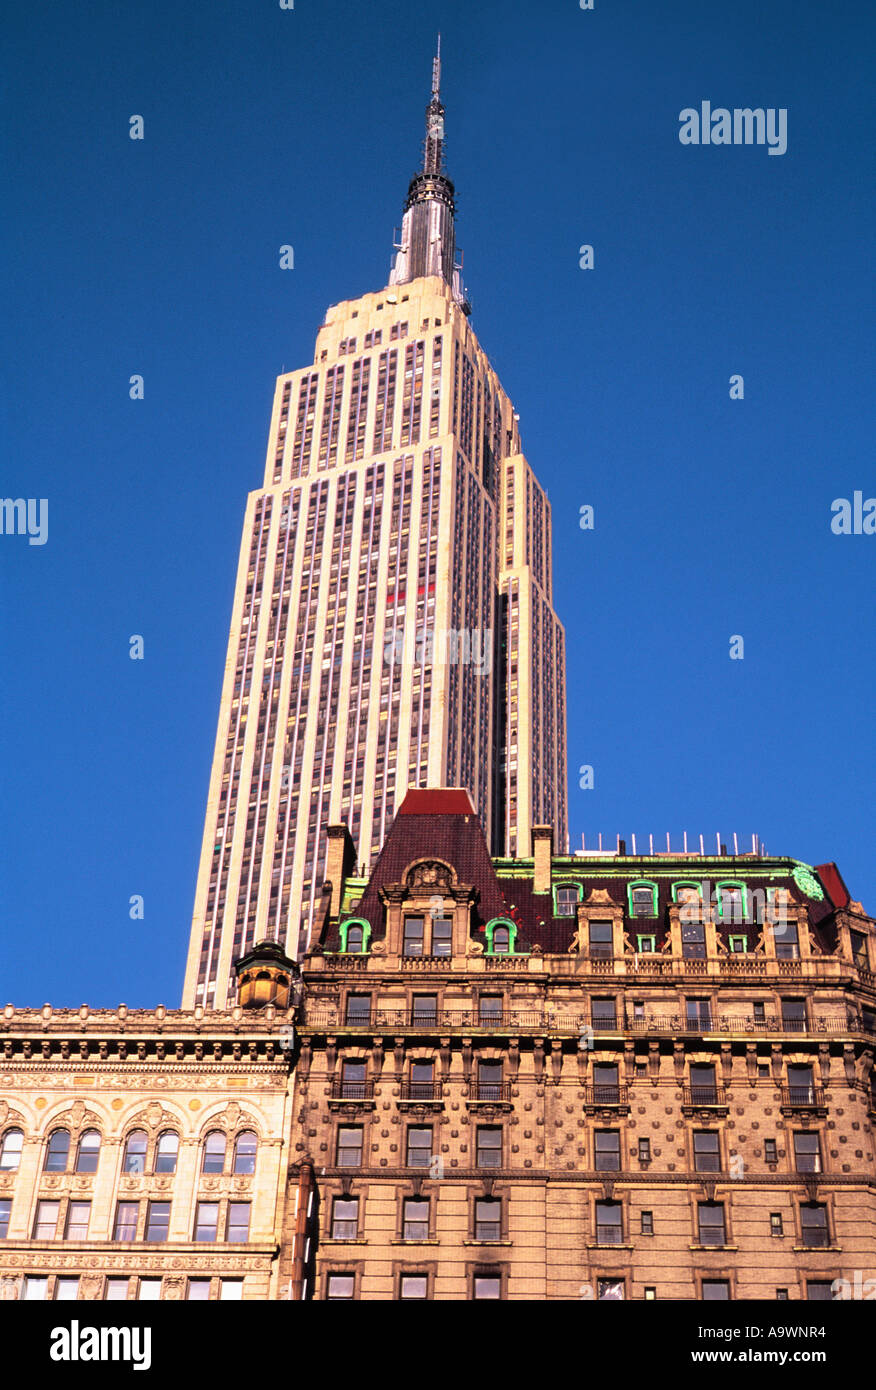 New York City, l'Empire State Building. Vista dello skyline dalla 6th Avenue, Herald Square nel centro di Manhattan. Architettura Art Deco, New York, USA Foto Stock